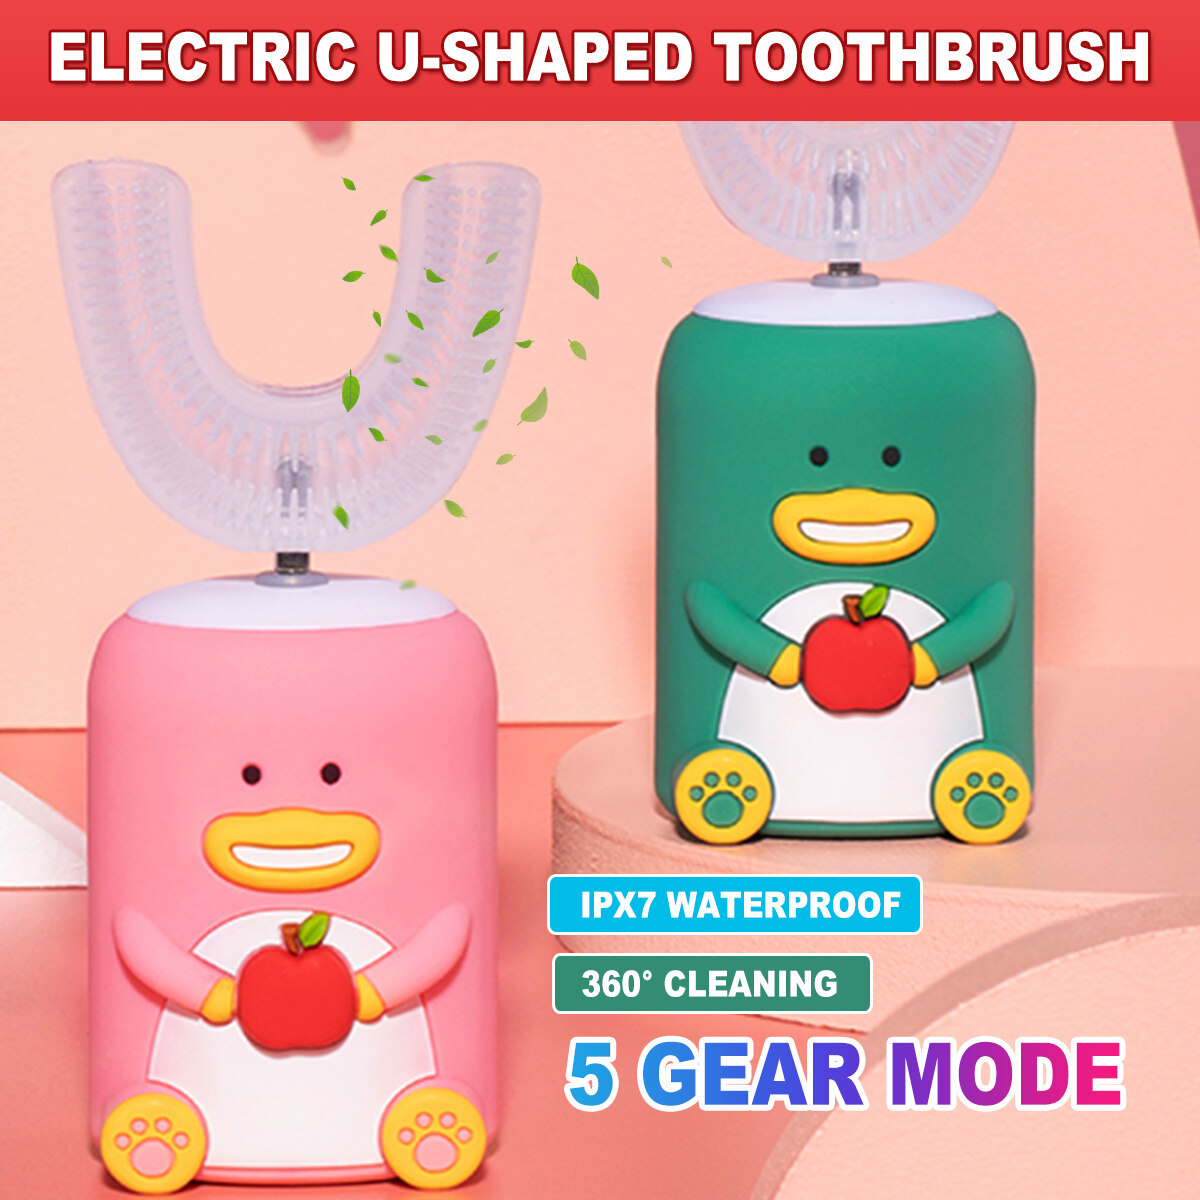 แปรงสีฟันอัลตร้าโซนิคสำหรับเด็ก,แปรงสีฟันไฟฟ้ากันน้ำ USB ซิลิโคนการ์ตูนรูปตัวยูอัตโนมัติสำหรับเด็ก